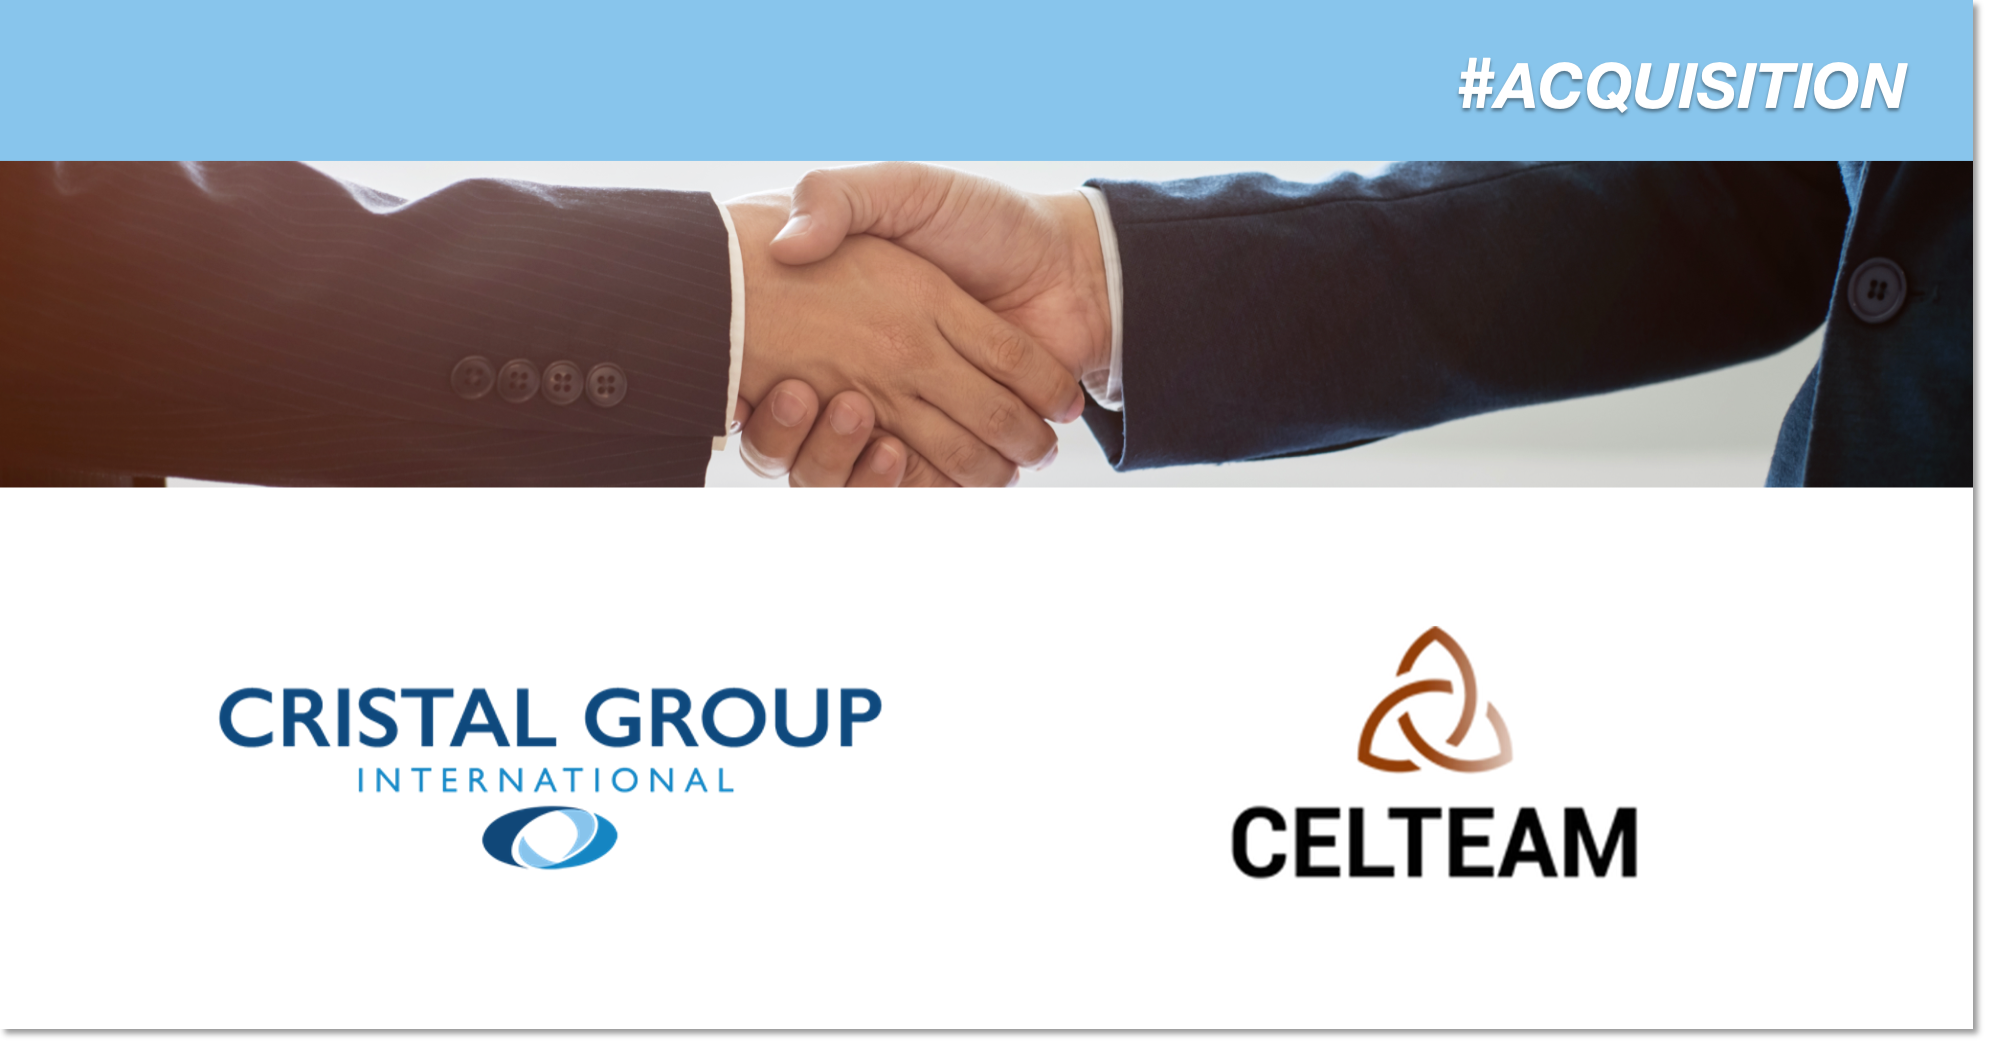 [ACQUISITION]: Cristal Group acquiert Celteam